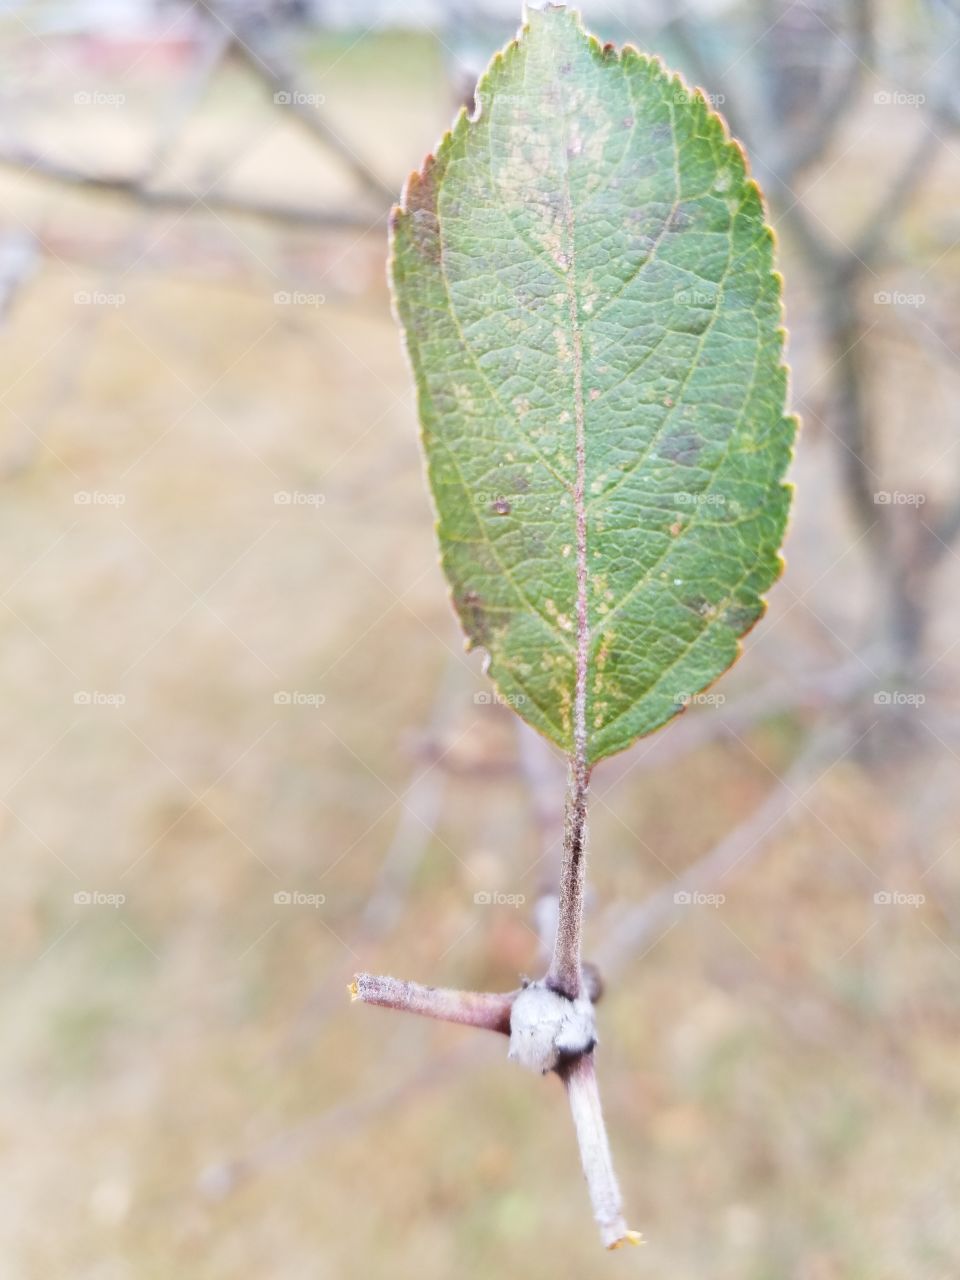 Leaf on a tree